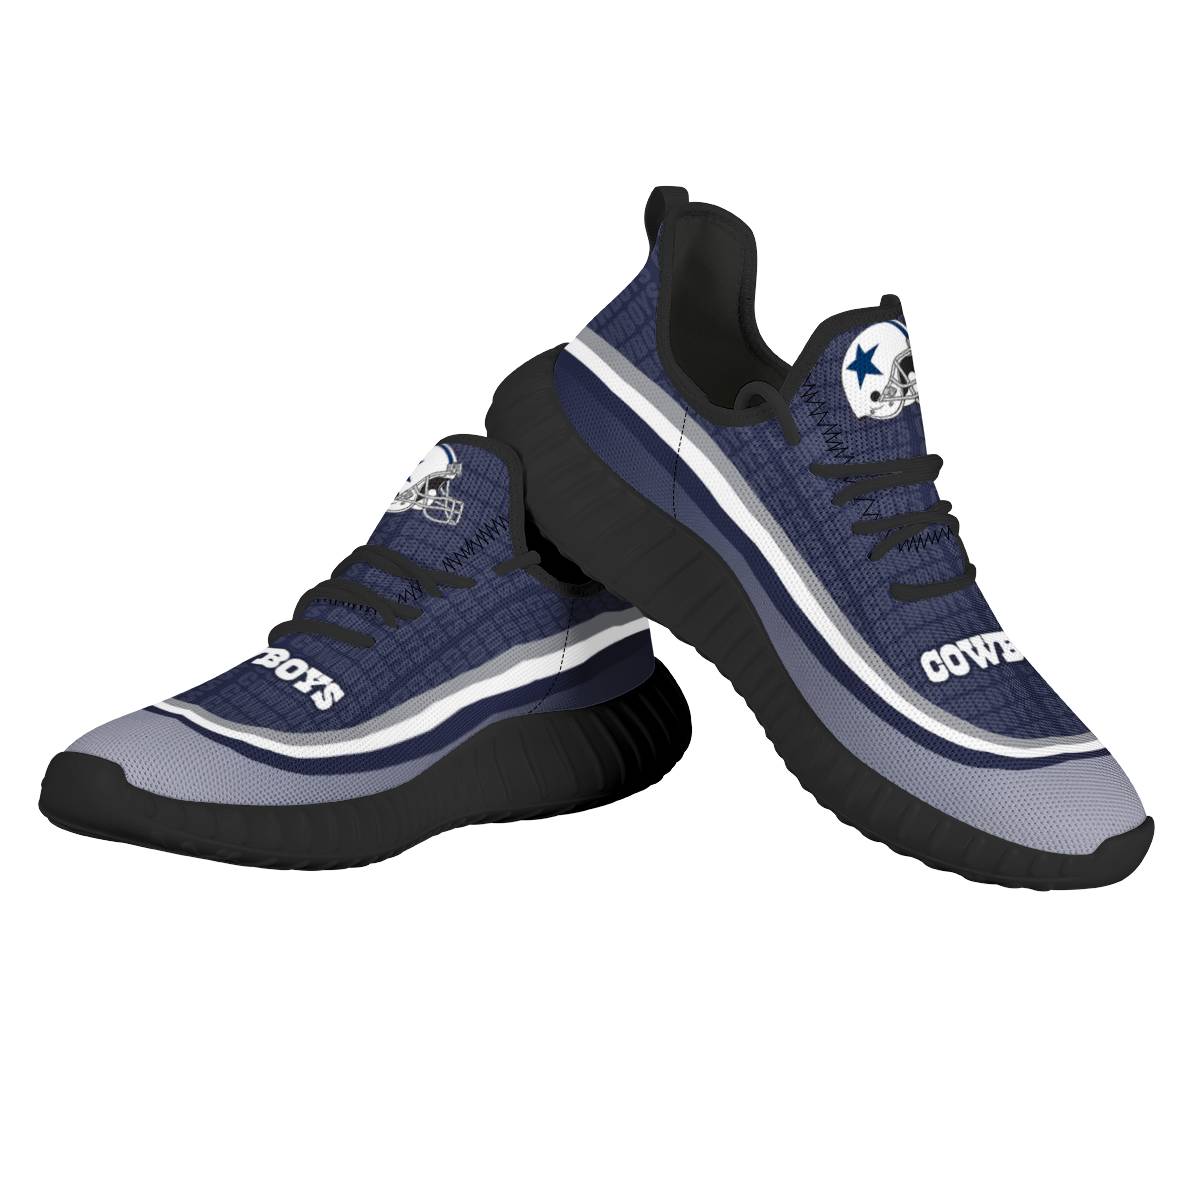 Men's NFL Dallas Cowboys Mesh Knit Sneakers/Shoes 001